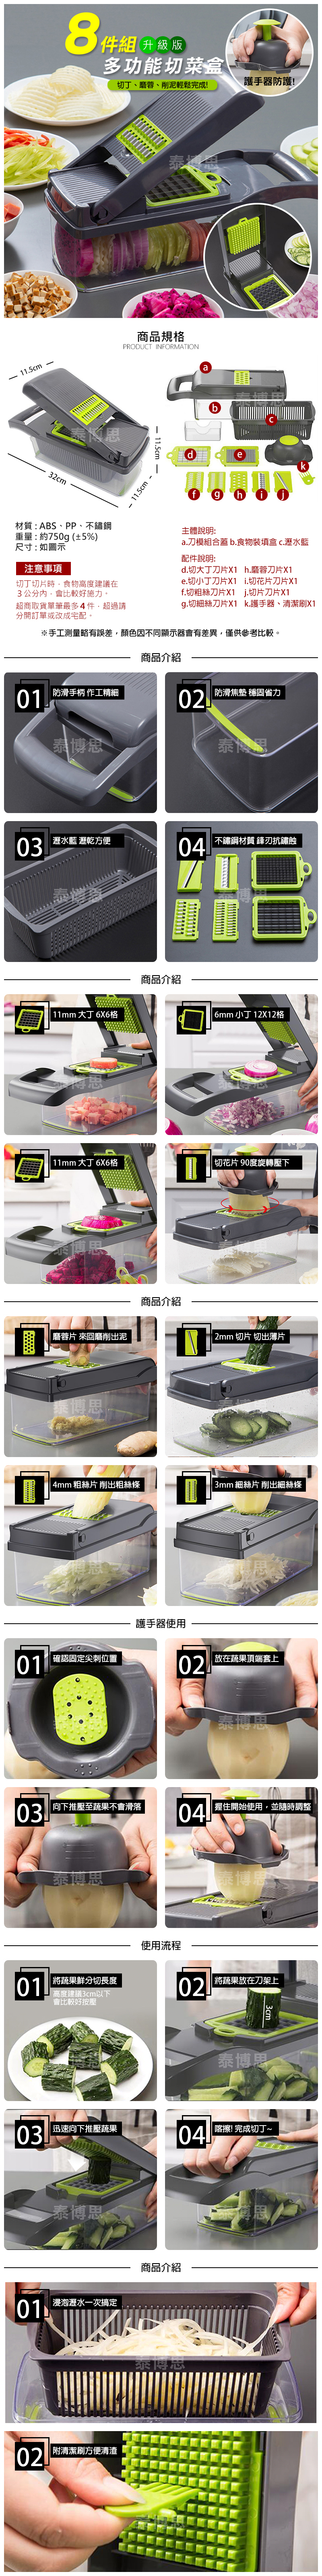 【泰博思】升級版8件組切菜神器 多功能切菜器 護手 廚房 不銹鋼 削皮 刨絲【F0435】